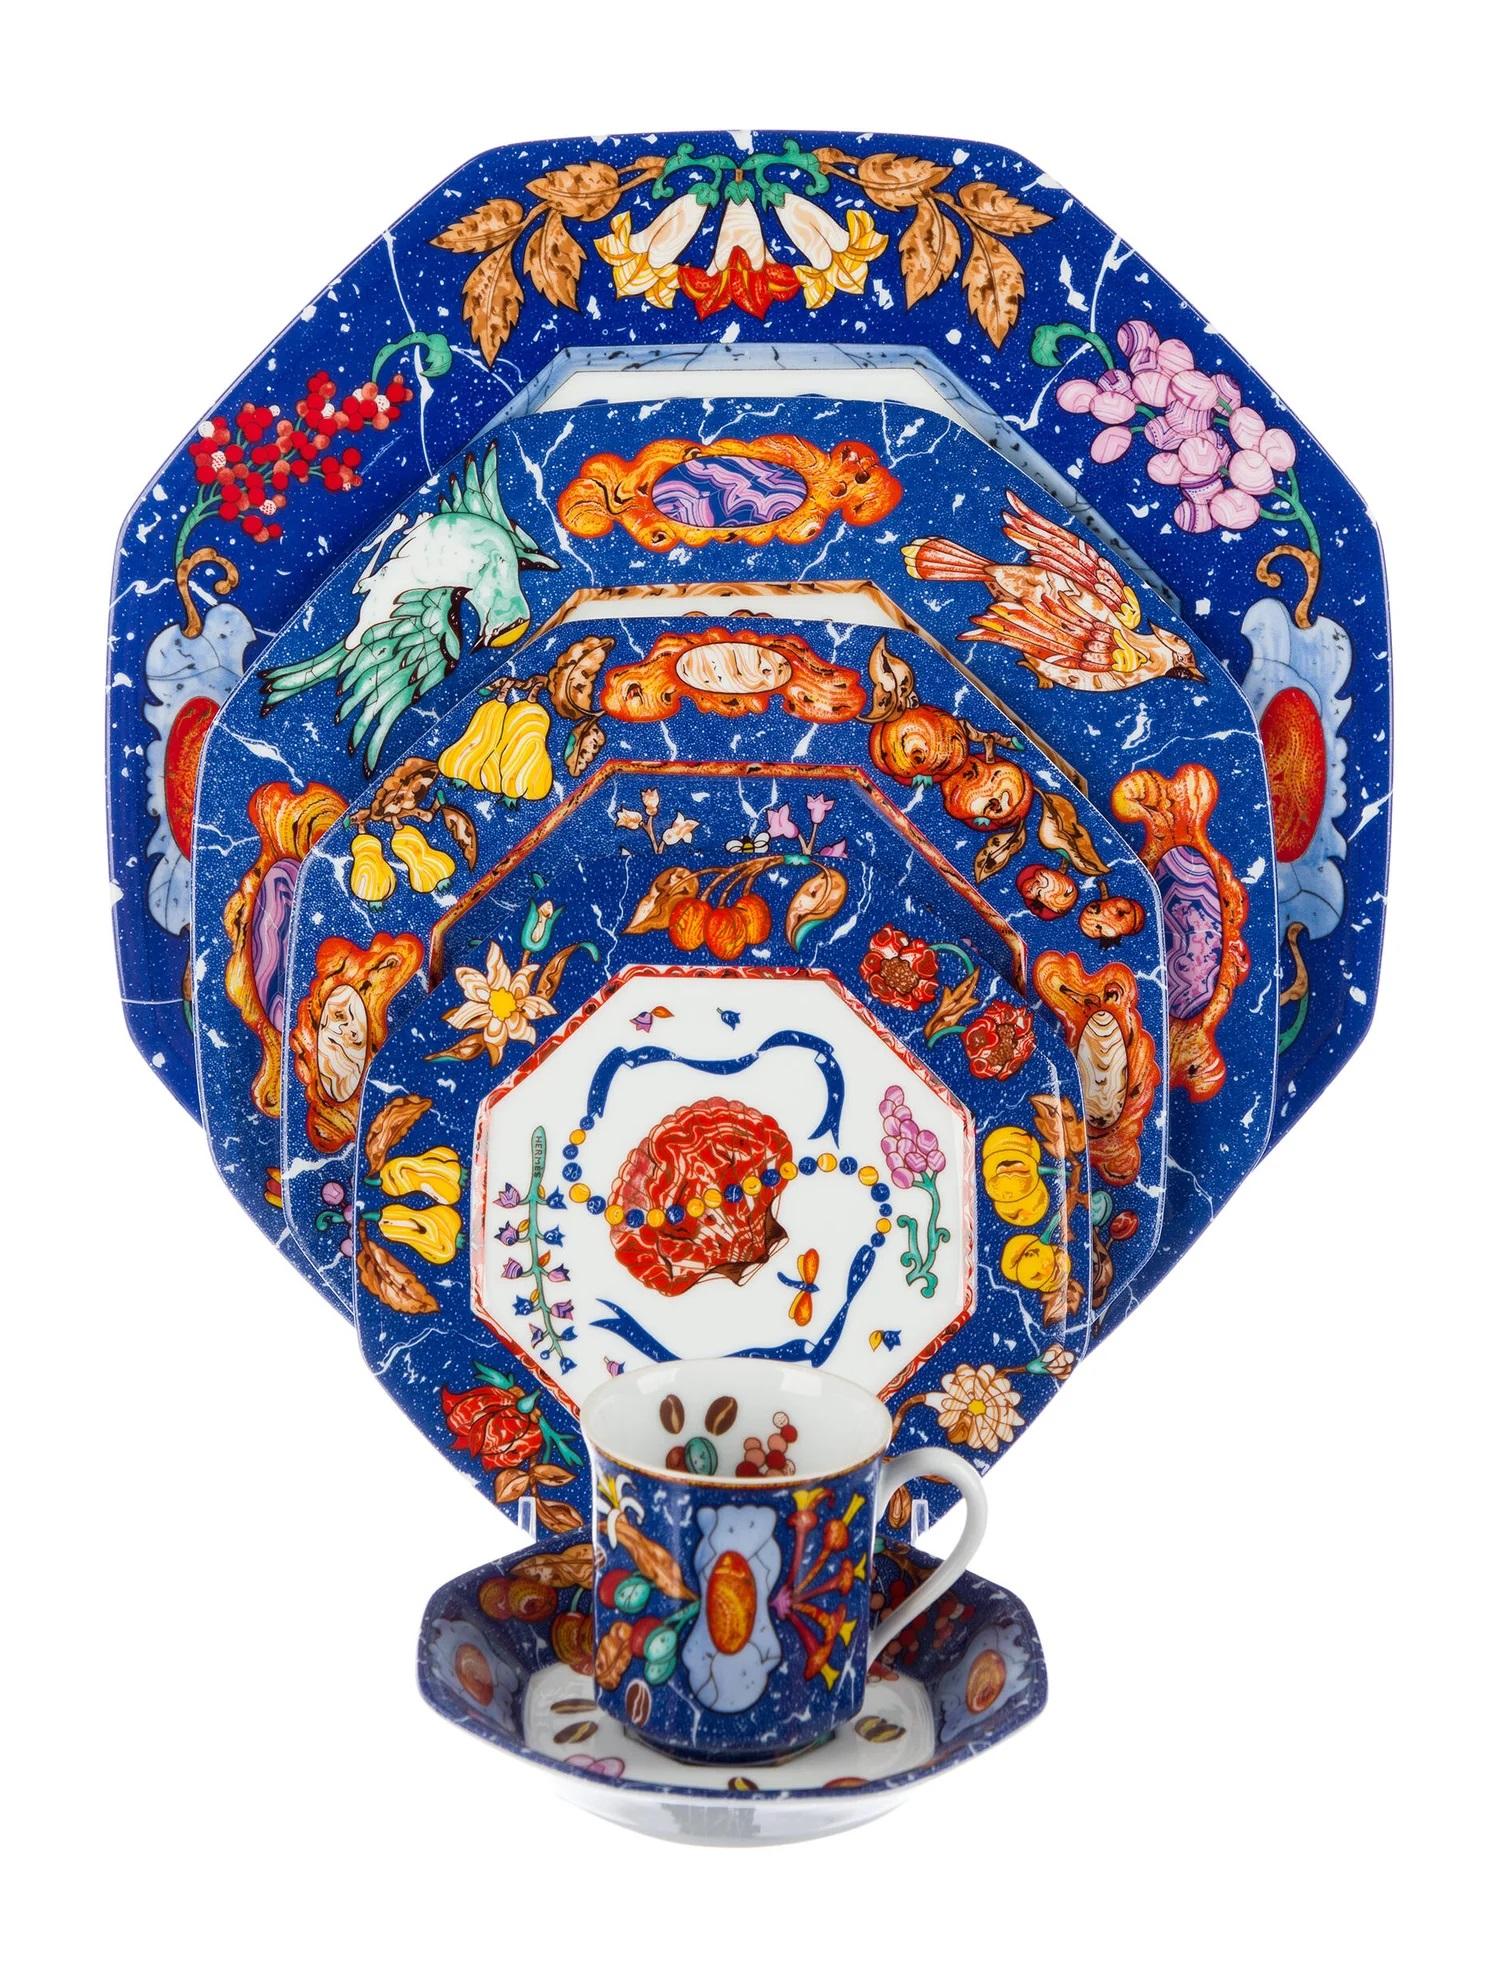 Ein 25-teiliges Tafelservice mit dem Muster Marqueterie de Pierres d'Orient et d'Occident von Hermès.

Mit weißem, blauem und mehrfarbigem Design mit Obst- und Blumenmotiven, getäfelten Wänden an den Außenseiten und Brandstempel an den